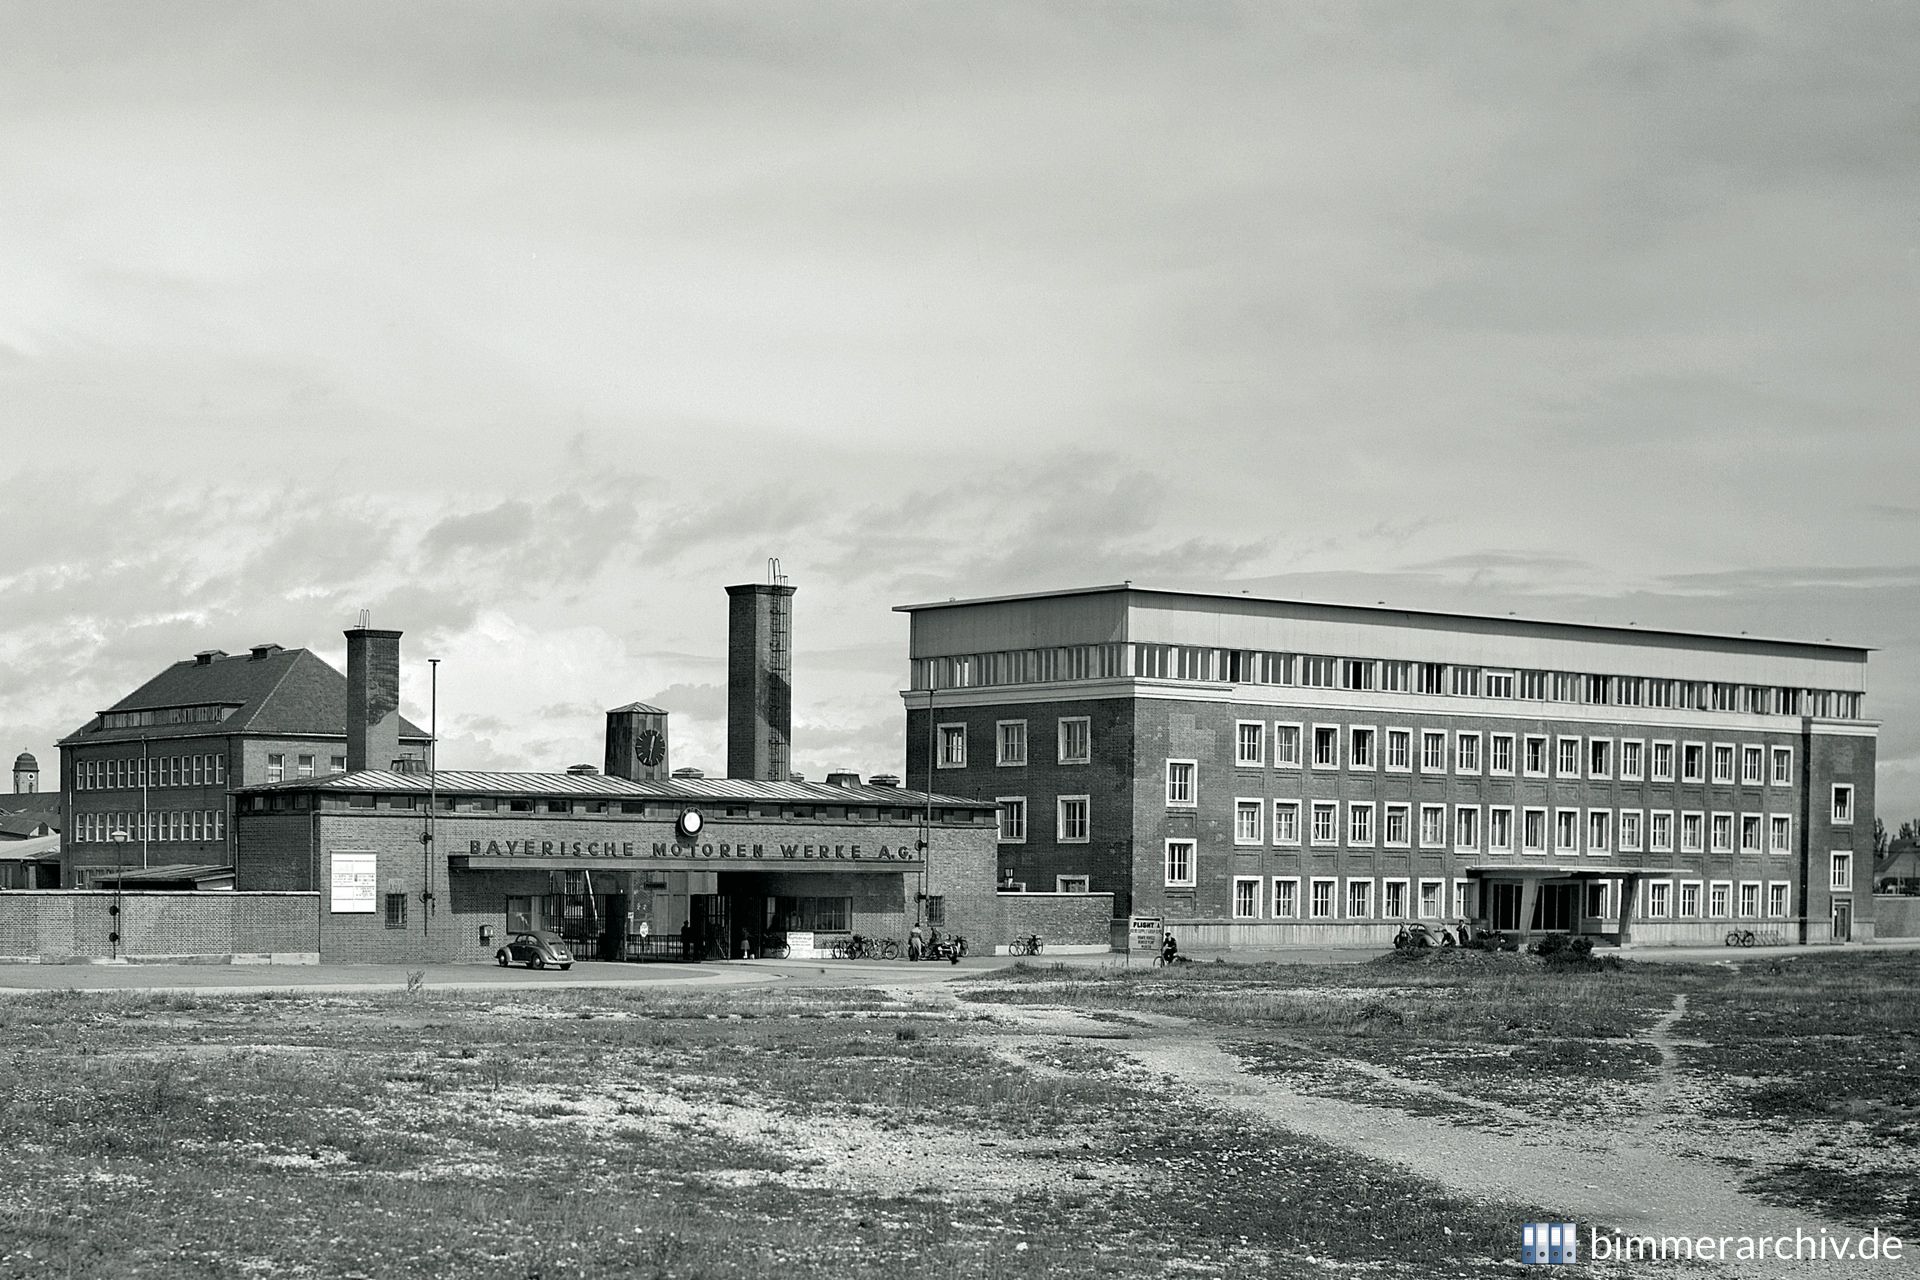 BMW Plant Munich - around 1952